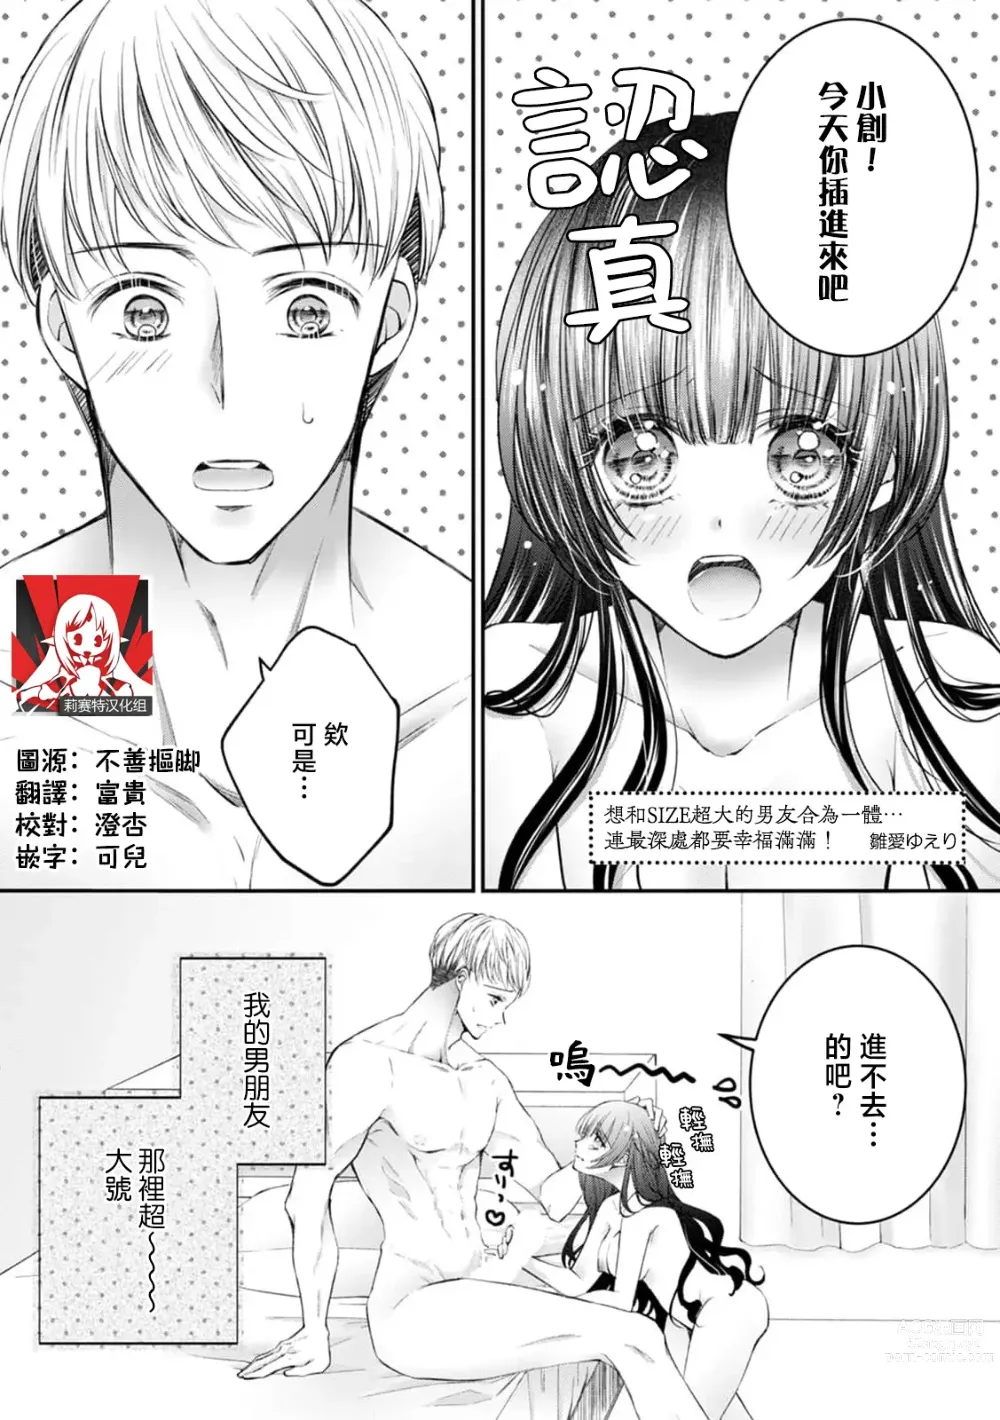 Page 1 of manga 想和SIZE超大的男友合为一体… 连最深处都要幸福满满！